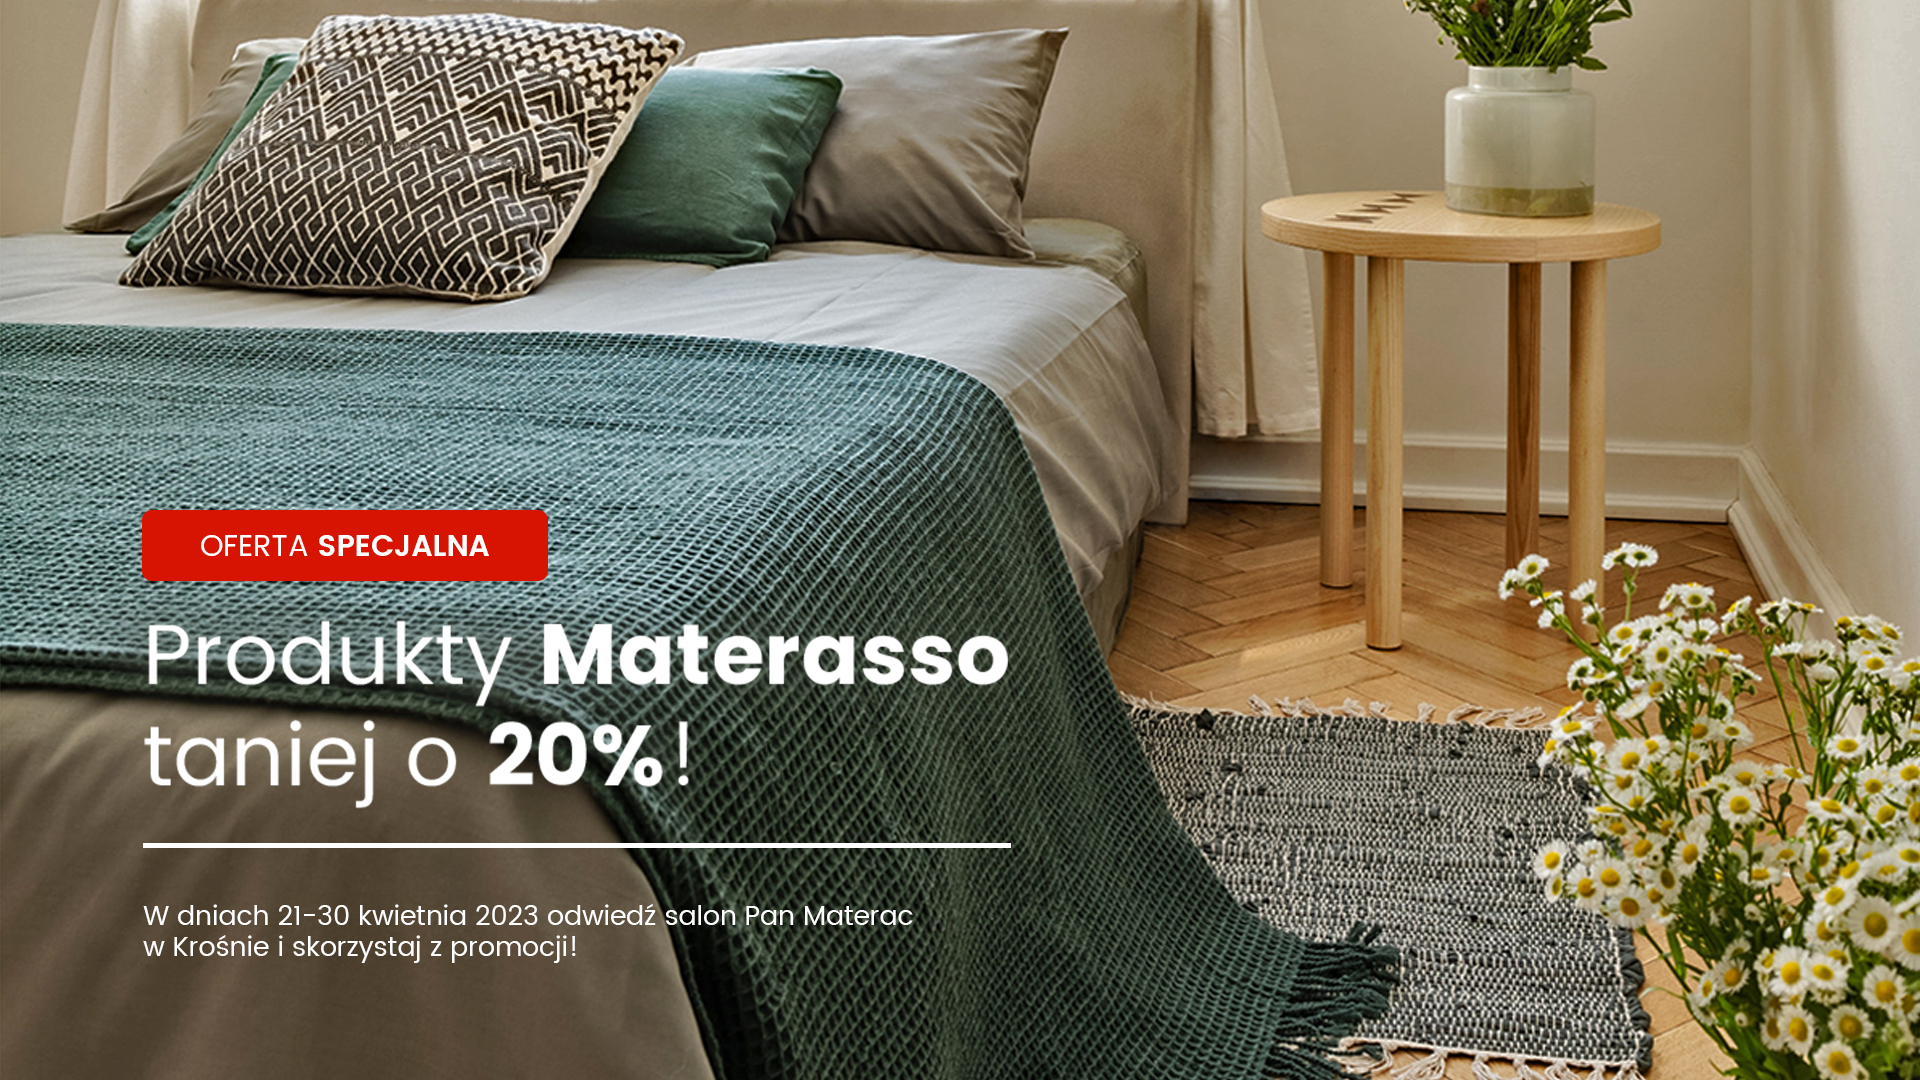 Promocje w salonie Pan Materac w Krośnie – materace Materasso taniej o 20%!